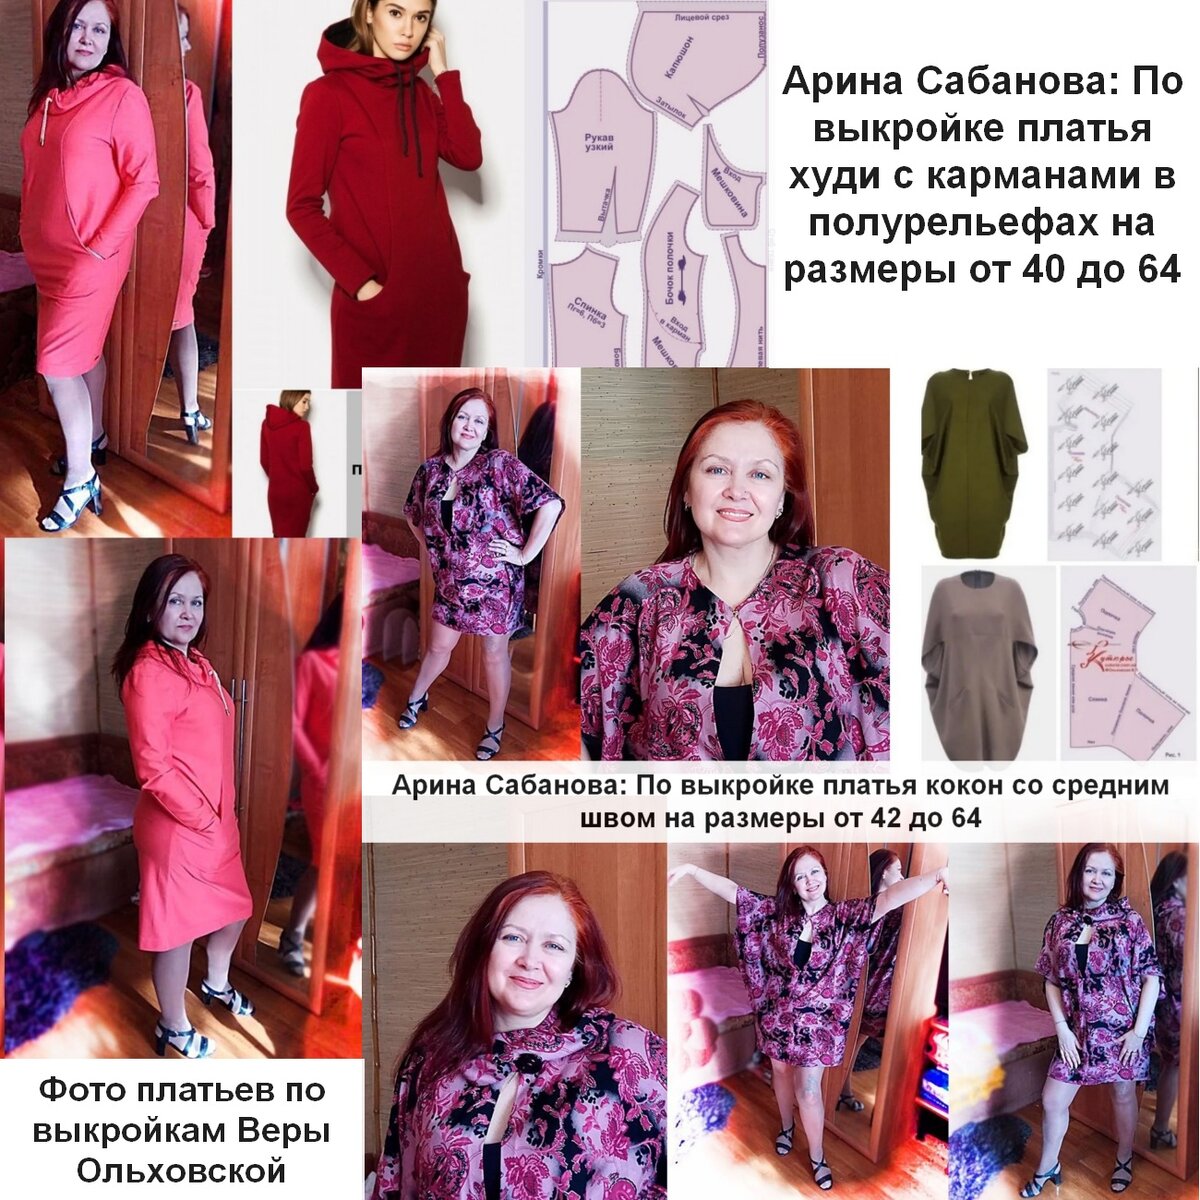 Купить выкройку платьев, сарафанов в интернет-магазине paraskevat.ru